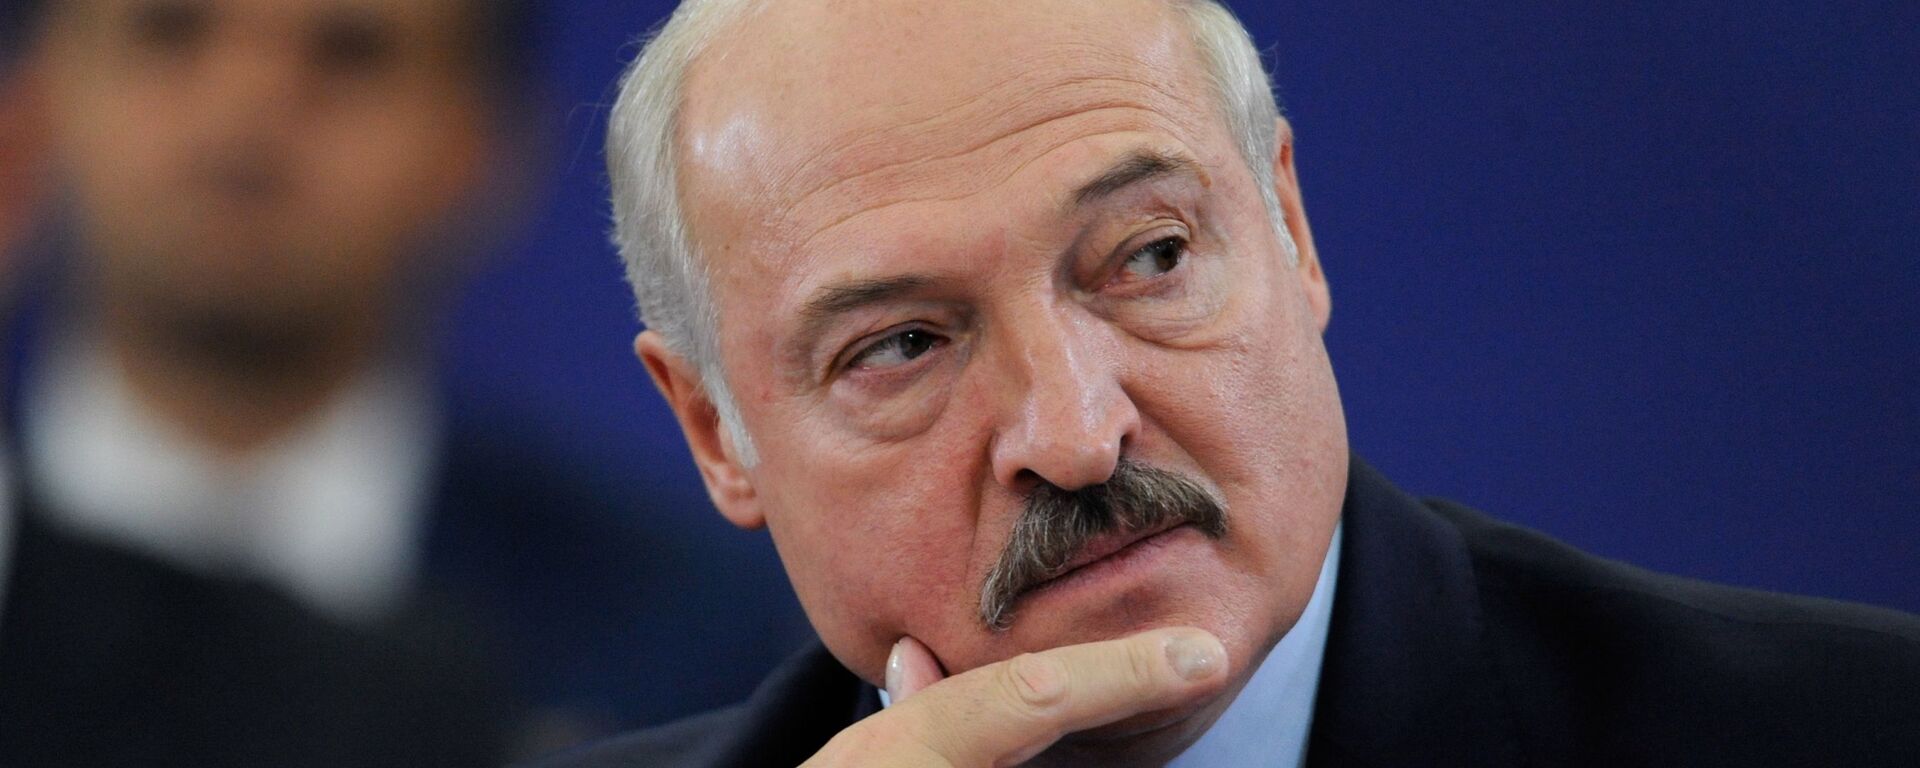 Alexandr Lukashenko, el presidente de Bielorrusia - Sputnik Mundo, 1920, 09.11.2021